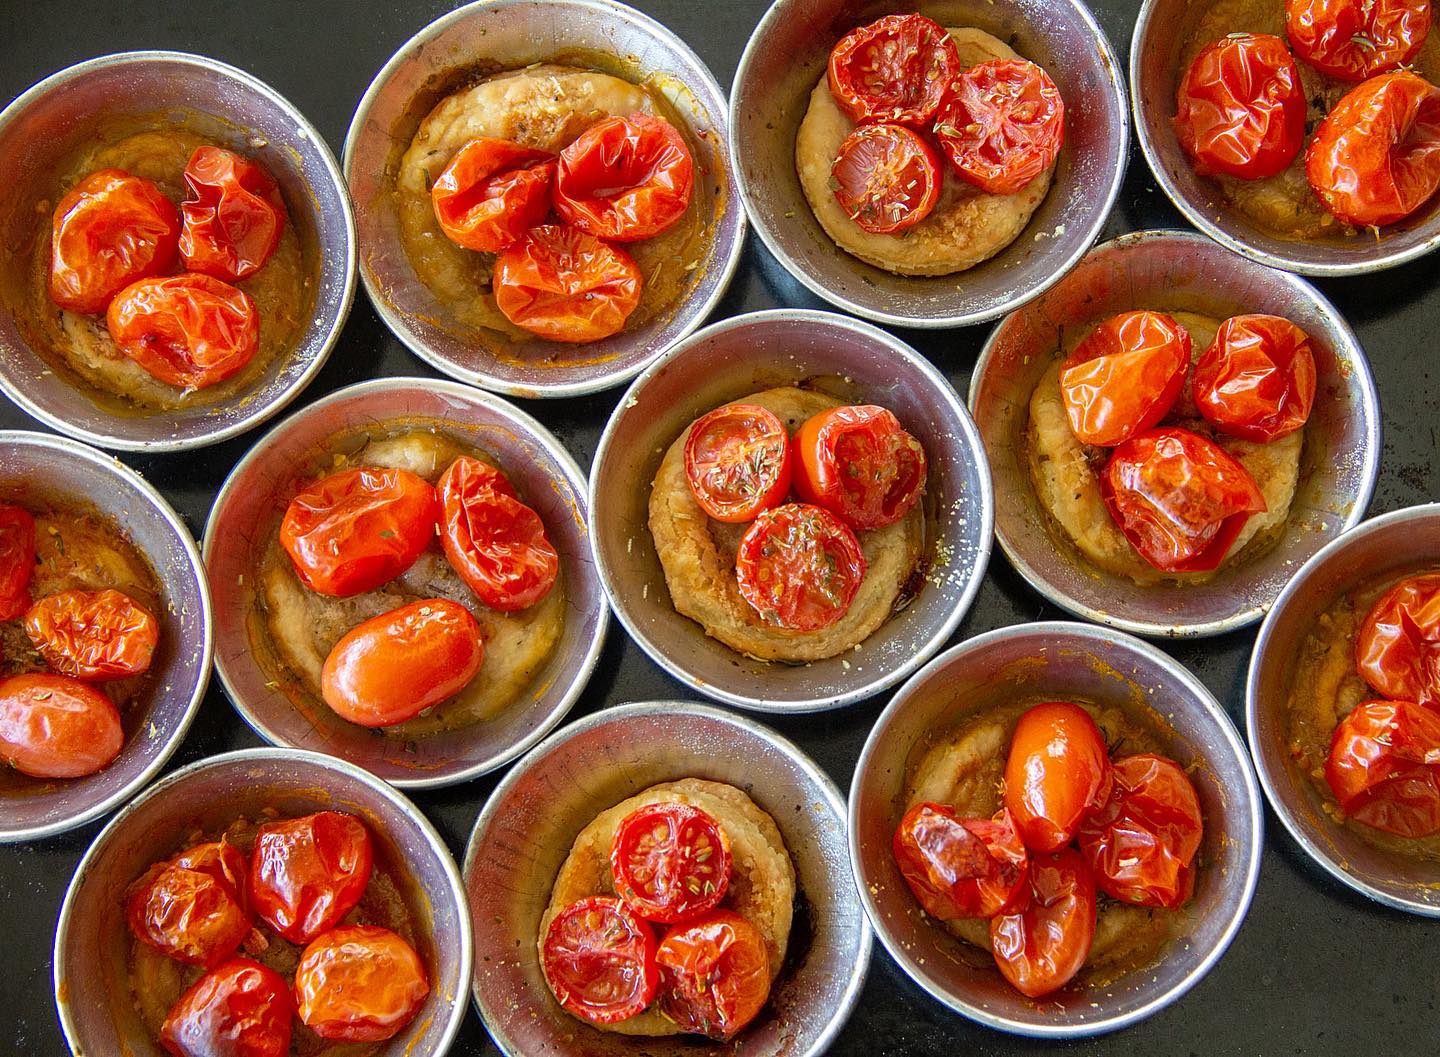 Petites tartelettes aux tomates cerises pour l’apéritif. Là, sur la photo, elles viennent juste de sortir du four. Et la recette est en ligne sur mon blog ! Allez y faire un tour 😃 #tartelettestomates #tomatescerises #tartedetomatescerises #tartedetomatecereja #tartelettesauxtomates #pourlaperitif #amusesbouches #cherrytomatoesrecipes #tomatocherrytart #wprecipemaker #line_lisbonne